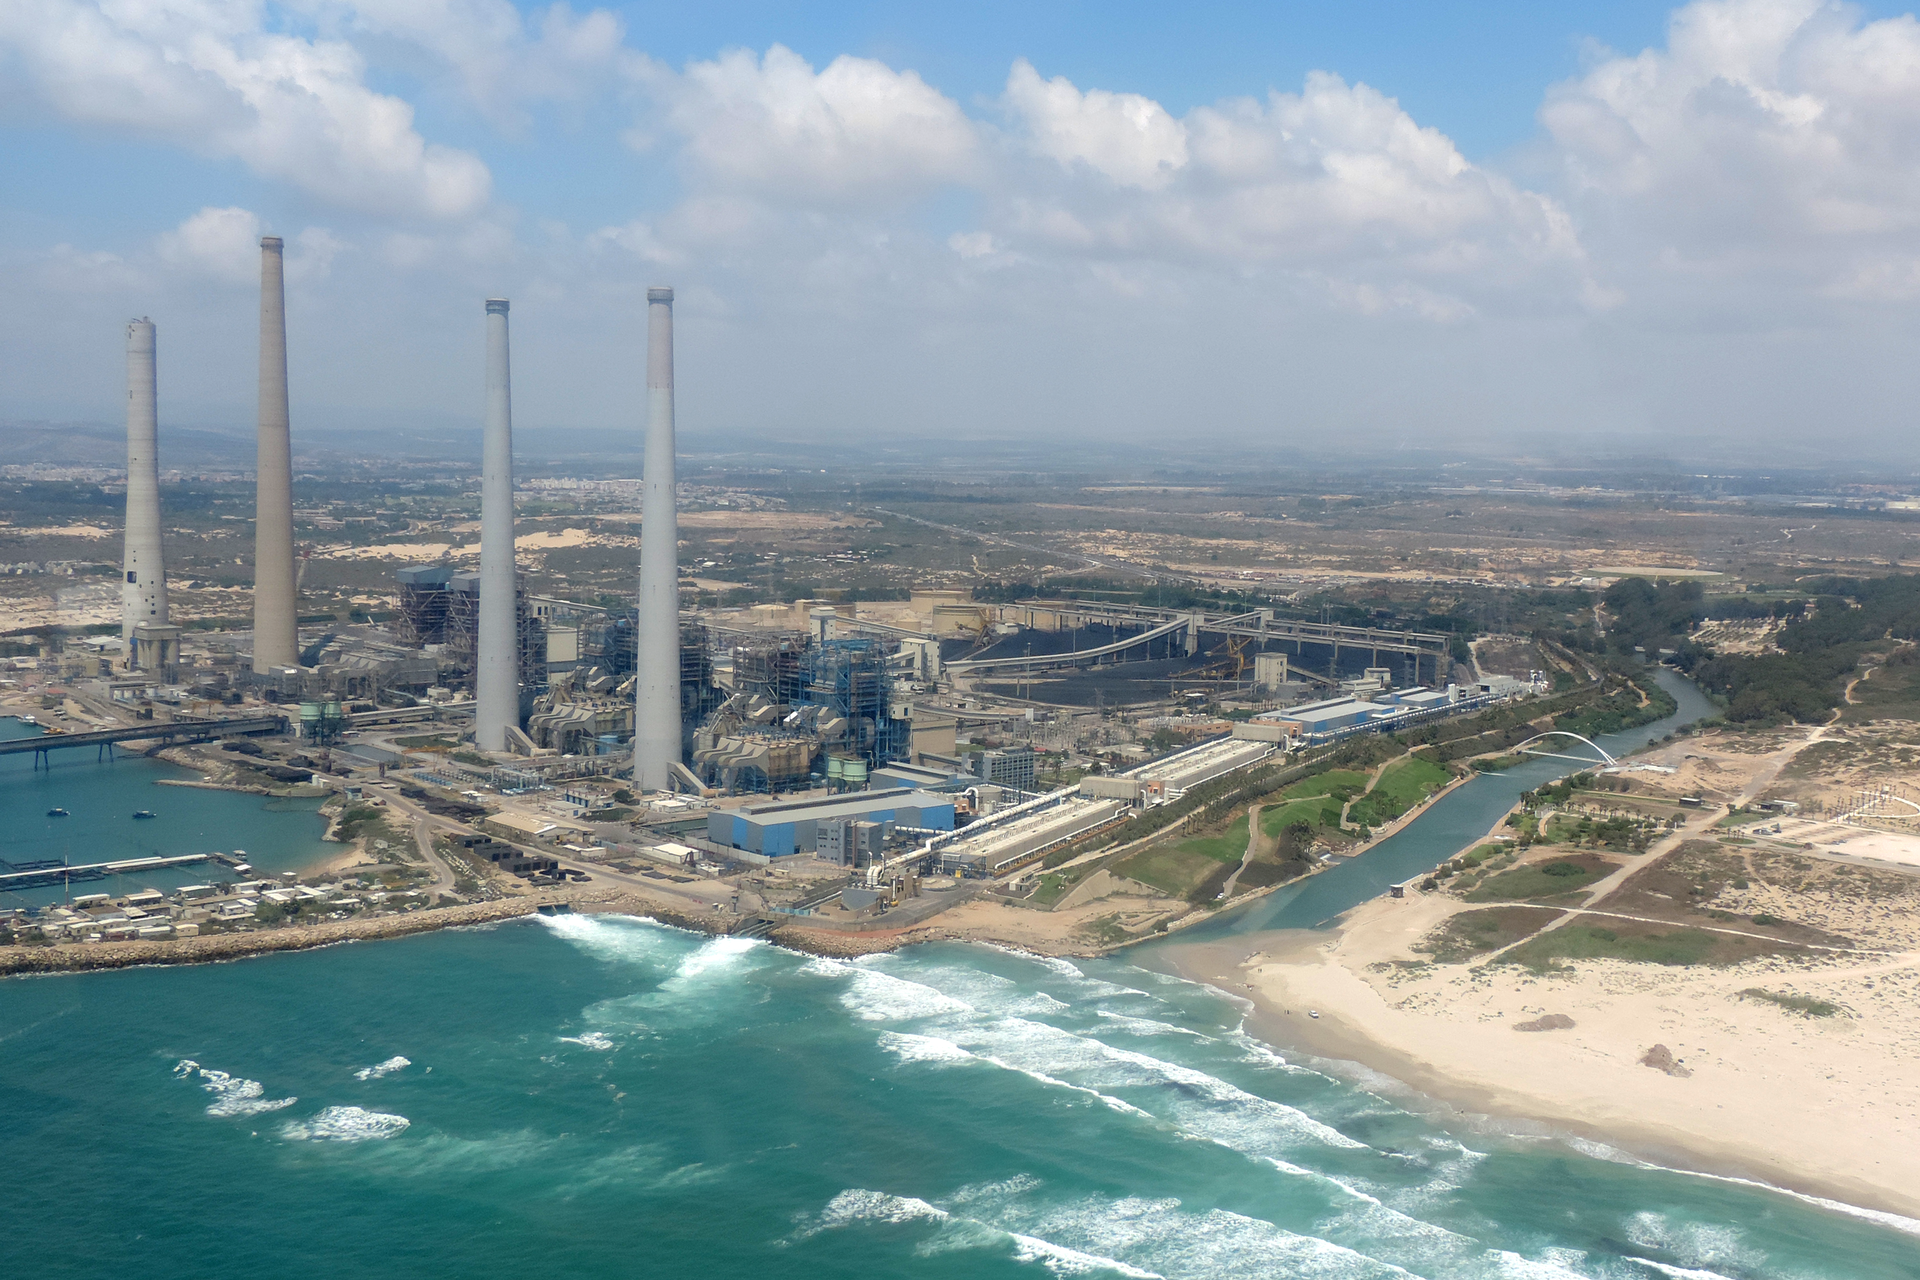 Grafika przedstawia zdjęcie największej na świecie stacji odsalania wody w Izraelu, która znajduje się przy brzegu morza. Na zdjęciu widoczna jest piaszczysta plaża, niebieskie morze z białymi niskimi falami. Przy brzegu są 4 wysokie szare okrągłe kominy. Za kominami są niskie szare budynki stacji.